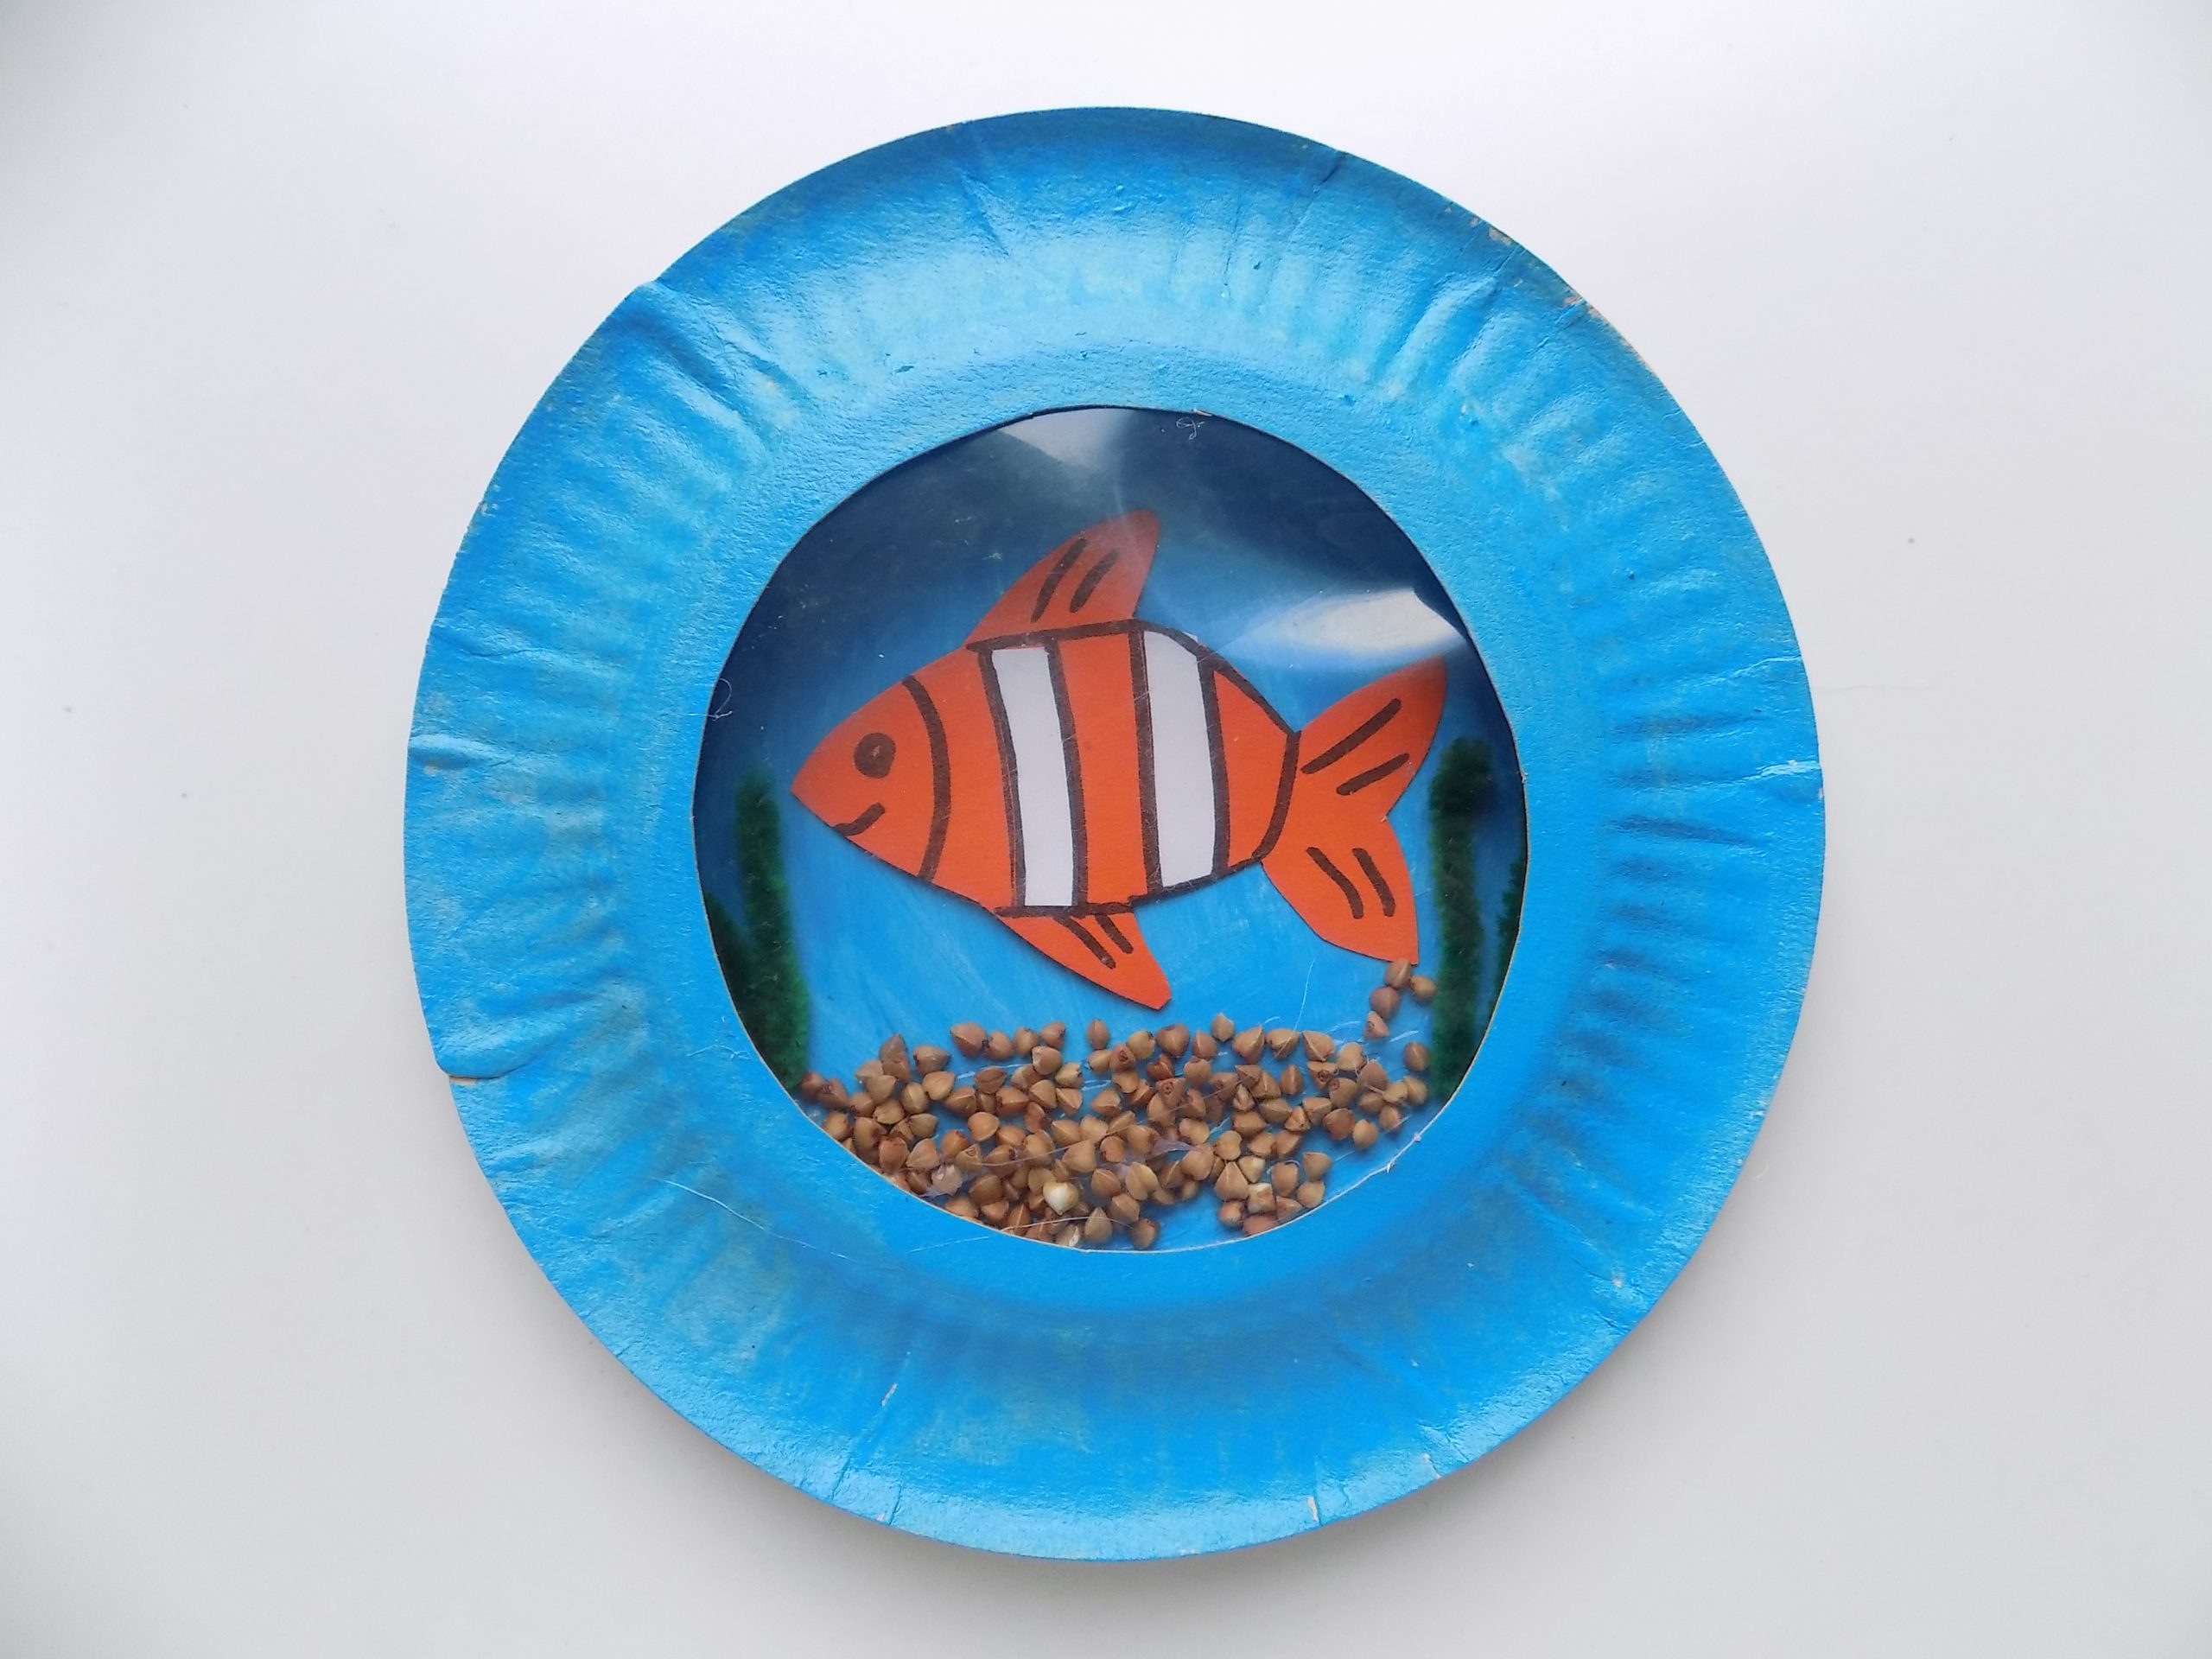 Рыбка из бумаги аквариум. Рыбка из бумажной тарелки. Аквариум из одноразовых тарелок. Поделка аквариум с рыбками. Аквариум из бумажной тарелки.